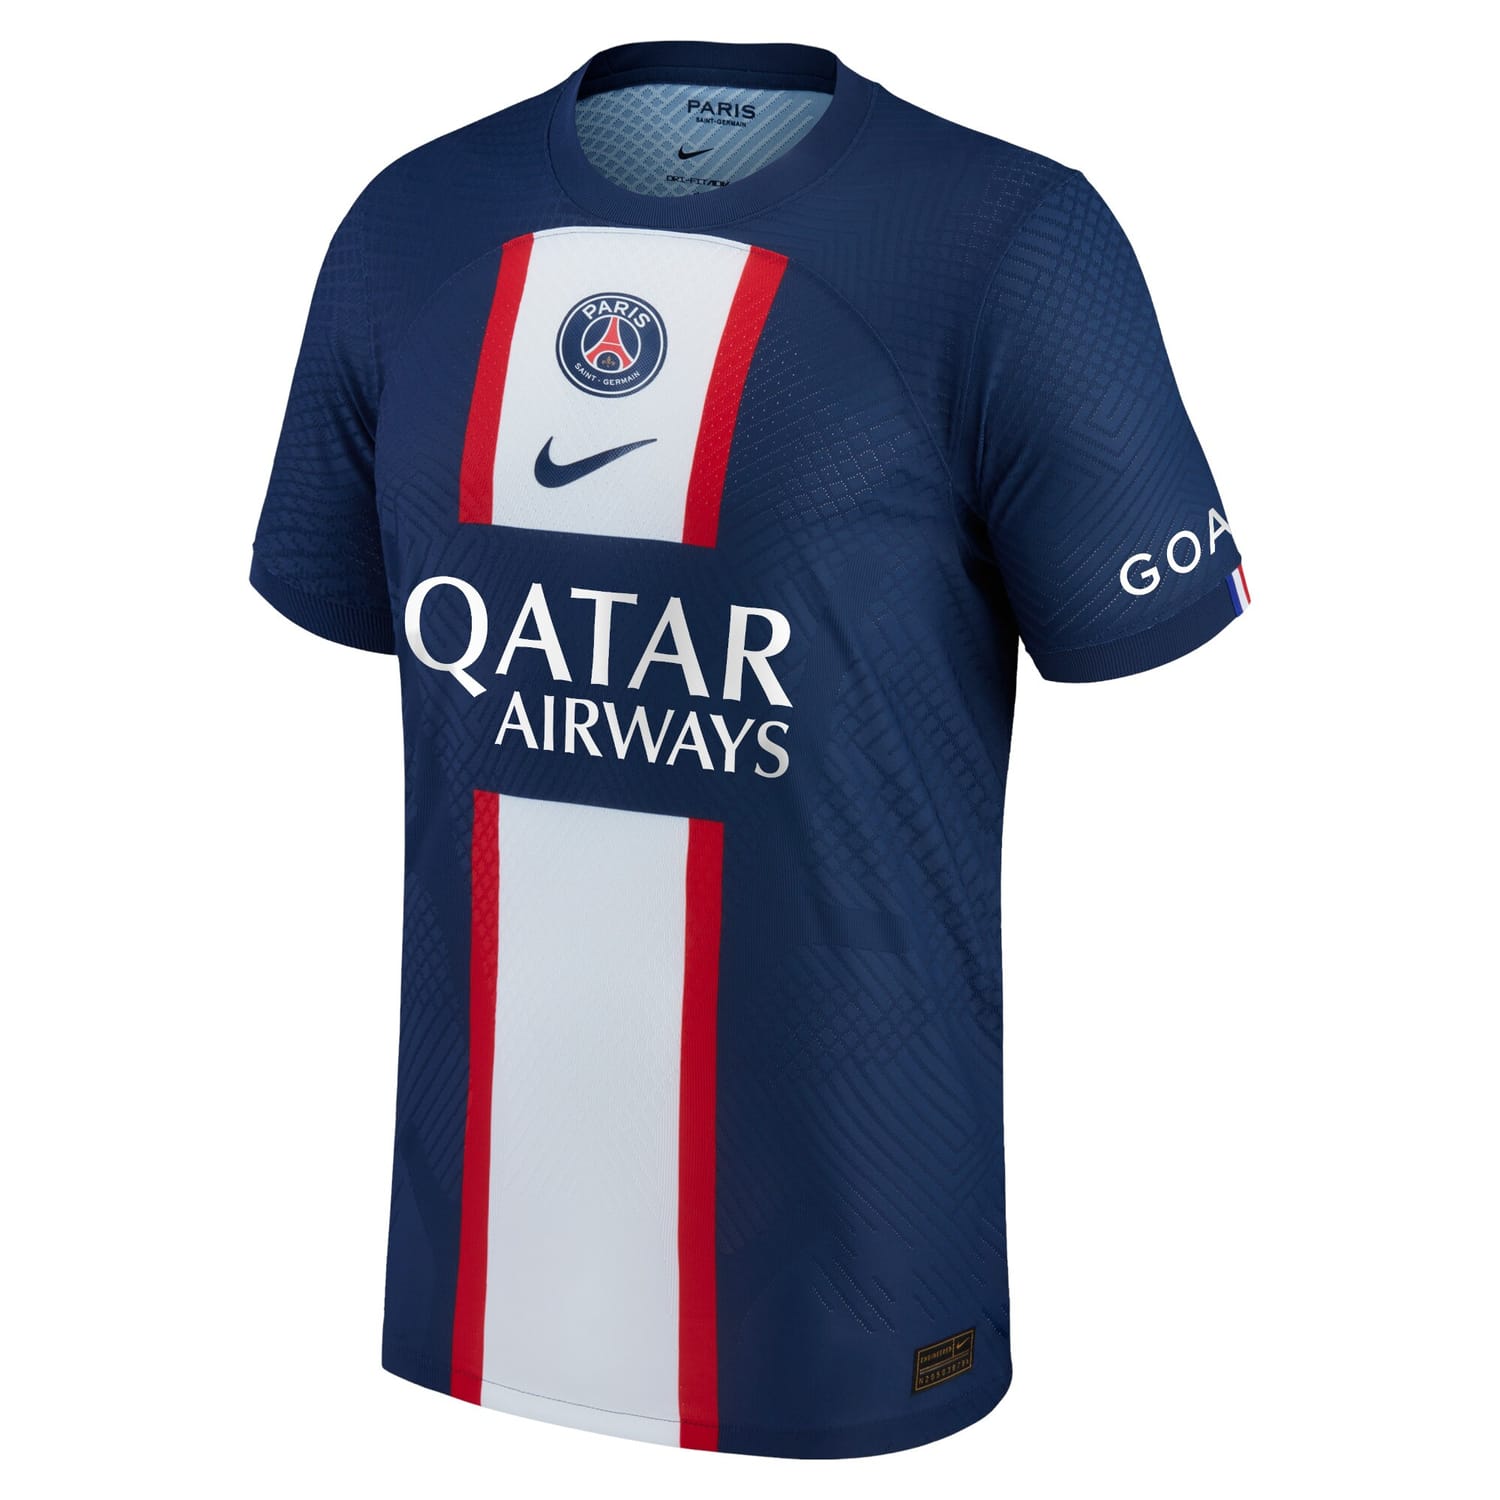 Ligue 1 Paris Saint-Germain Home Authentic Jersey Shirt Blue 2022-23 player Kylian Mbappe printing for Men